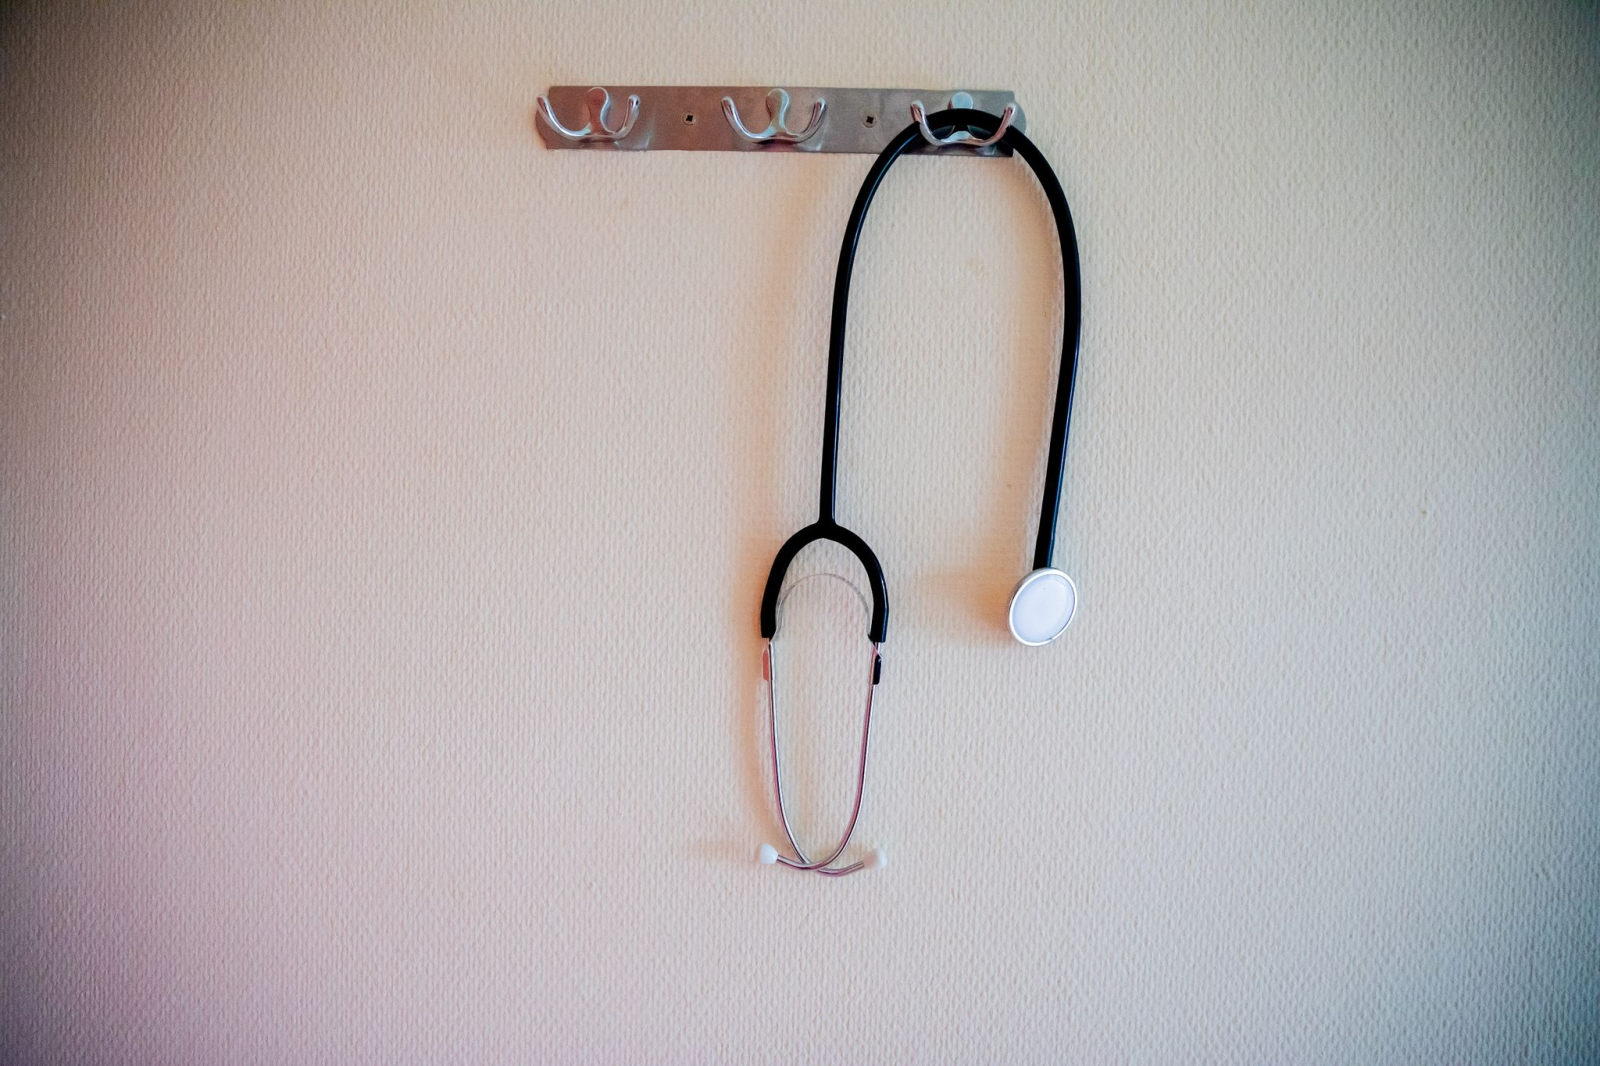 Ein Stethoskop hängt an einer Garderobe.